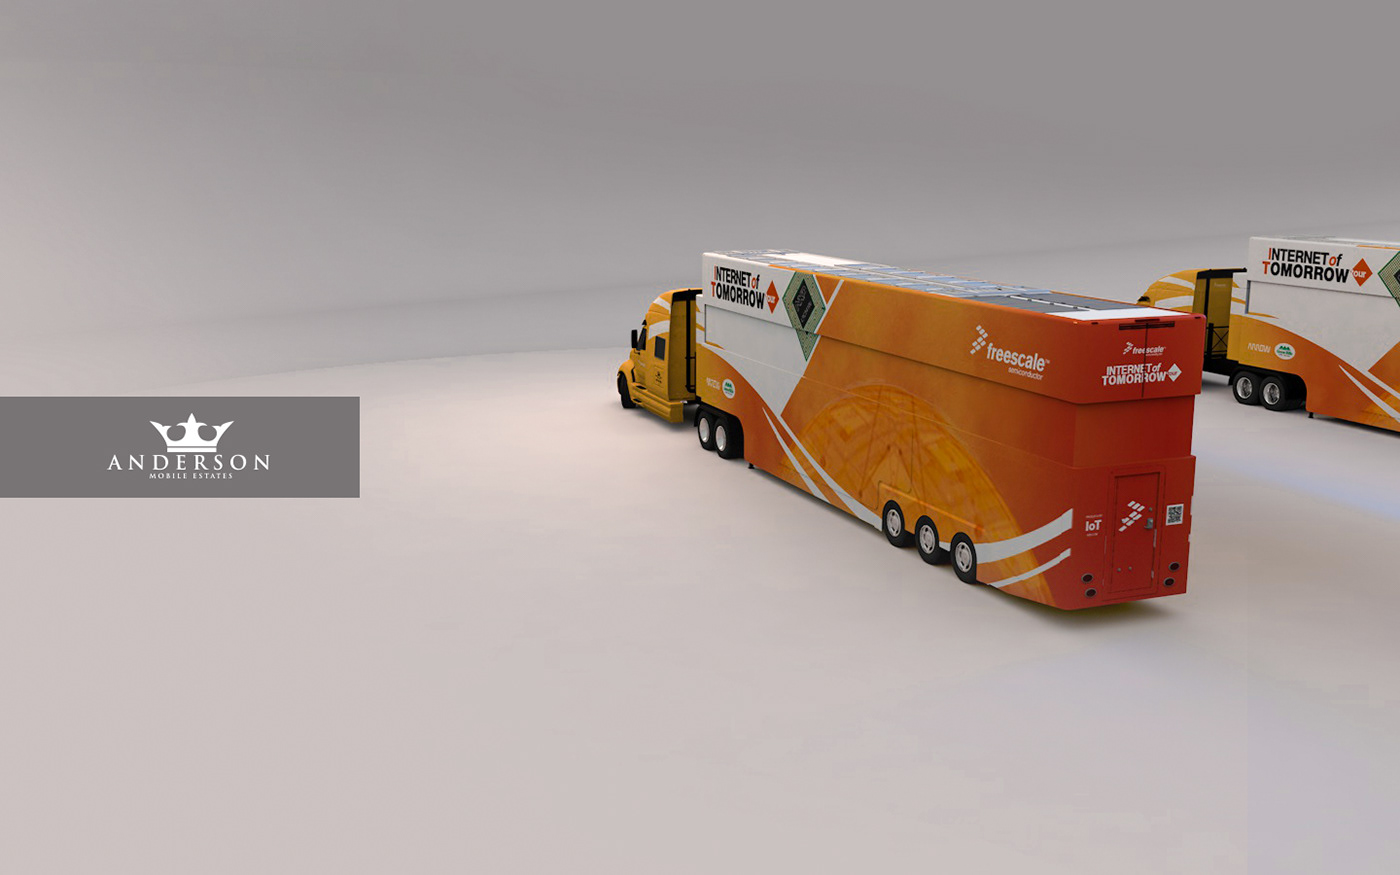 cinema 4d 3D Modleing trailer 3d sets exhibition layout semi truck Auto IoT mobile estate Freescale